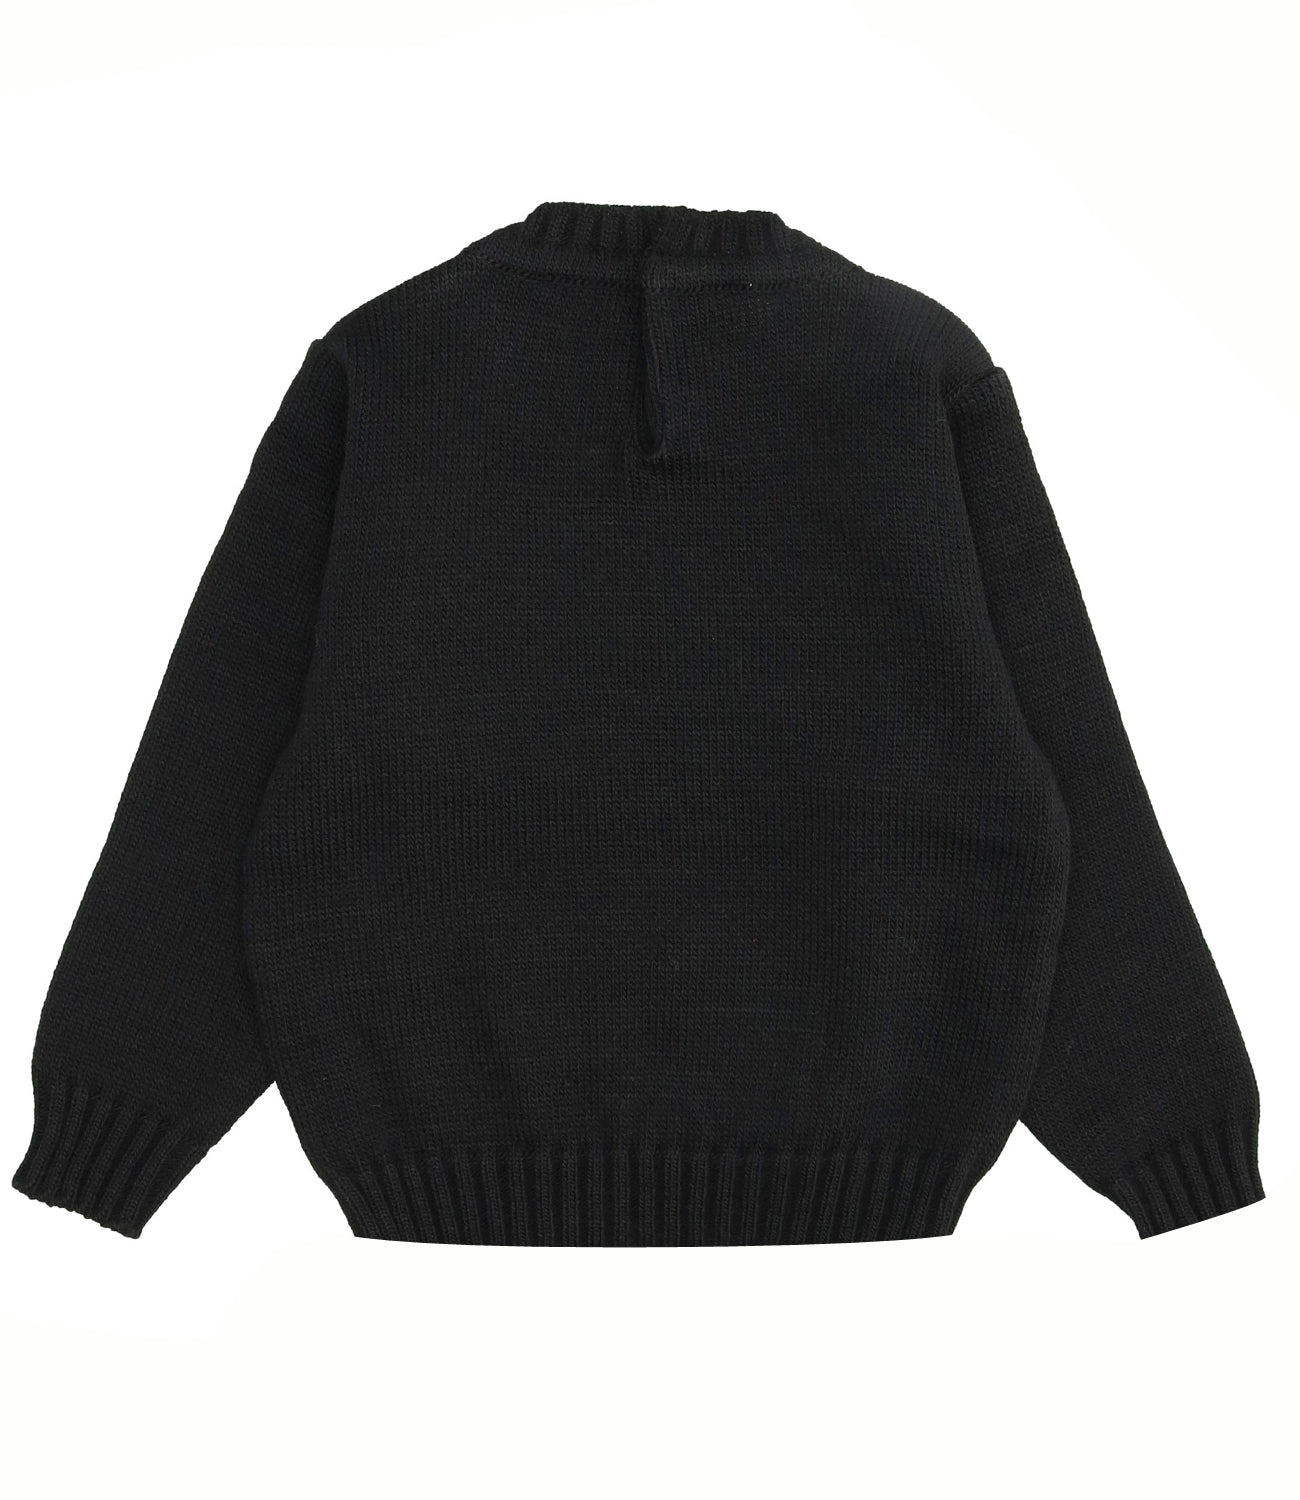 Gaelle Paris | Black Sweater